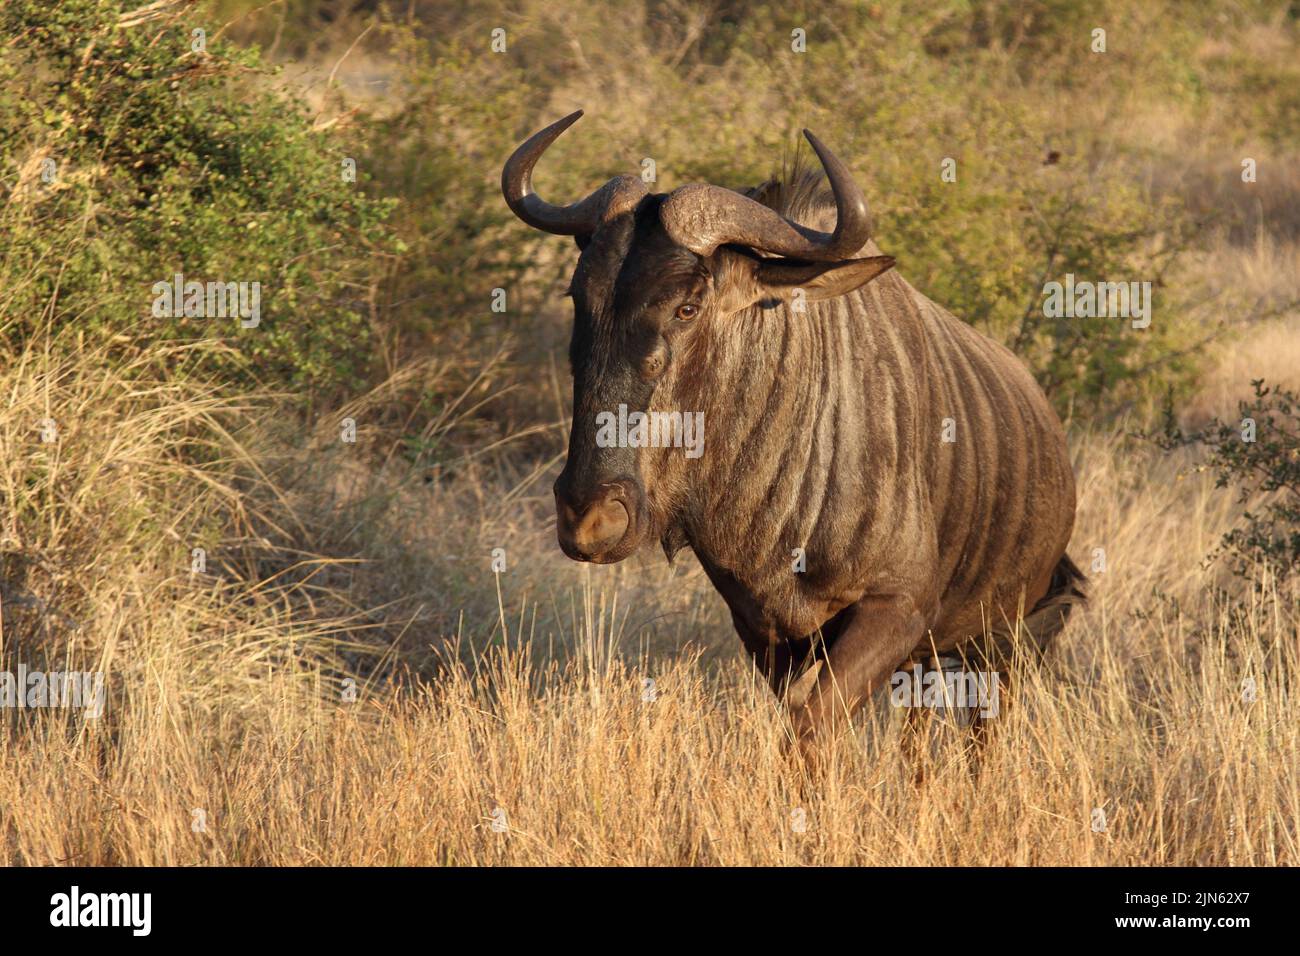 Streifengnu / Blue wildebeest / Connochaetes taurinus Stock Photo